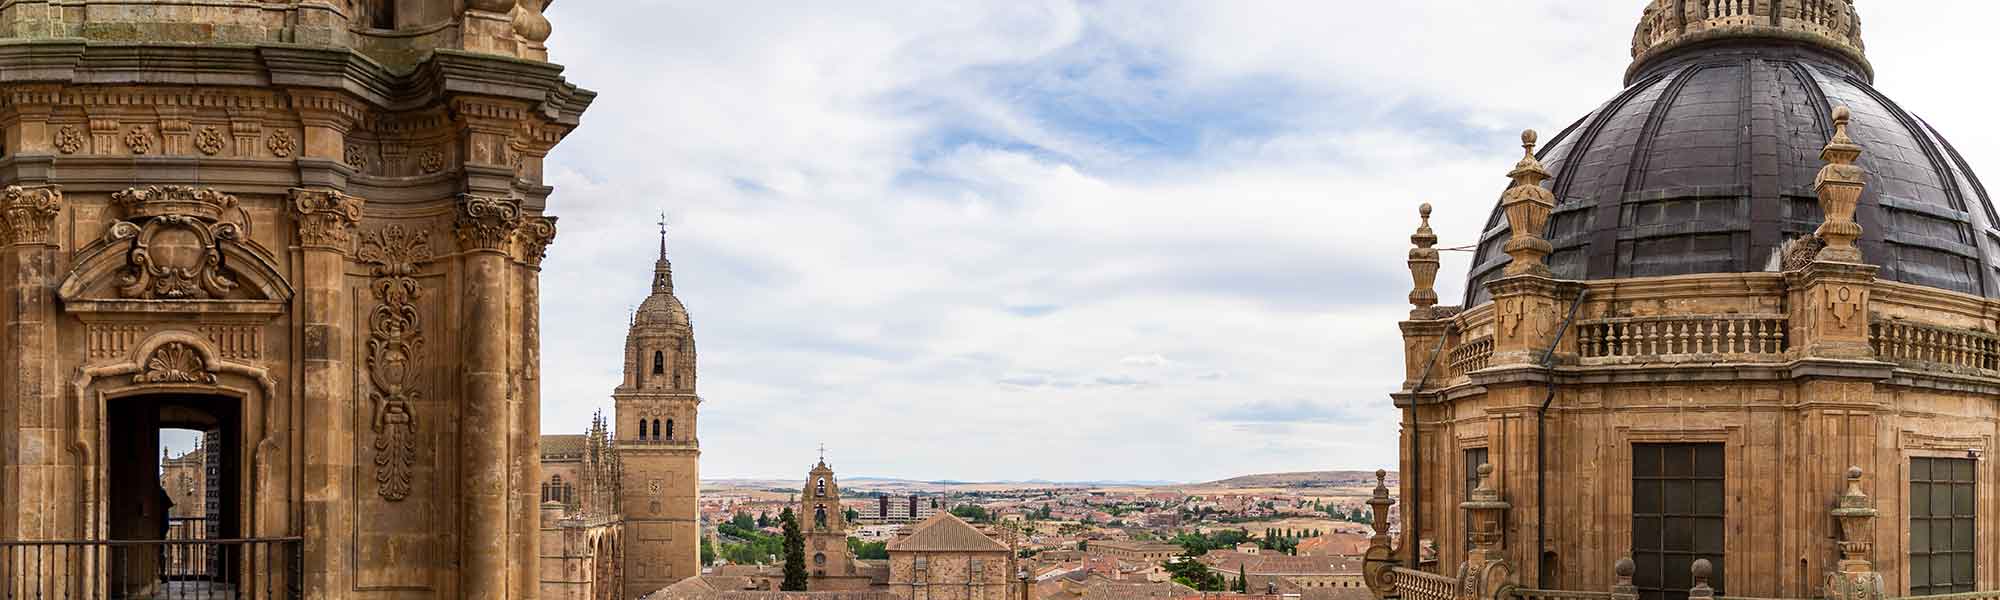 Aerial views of Salamanca, Spain